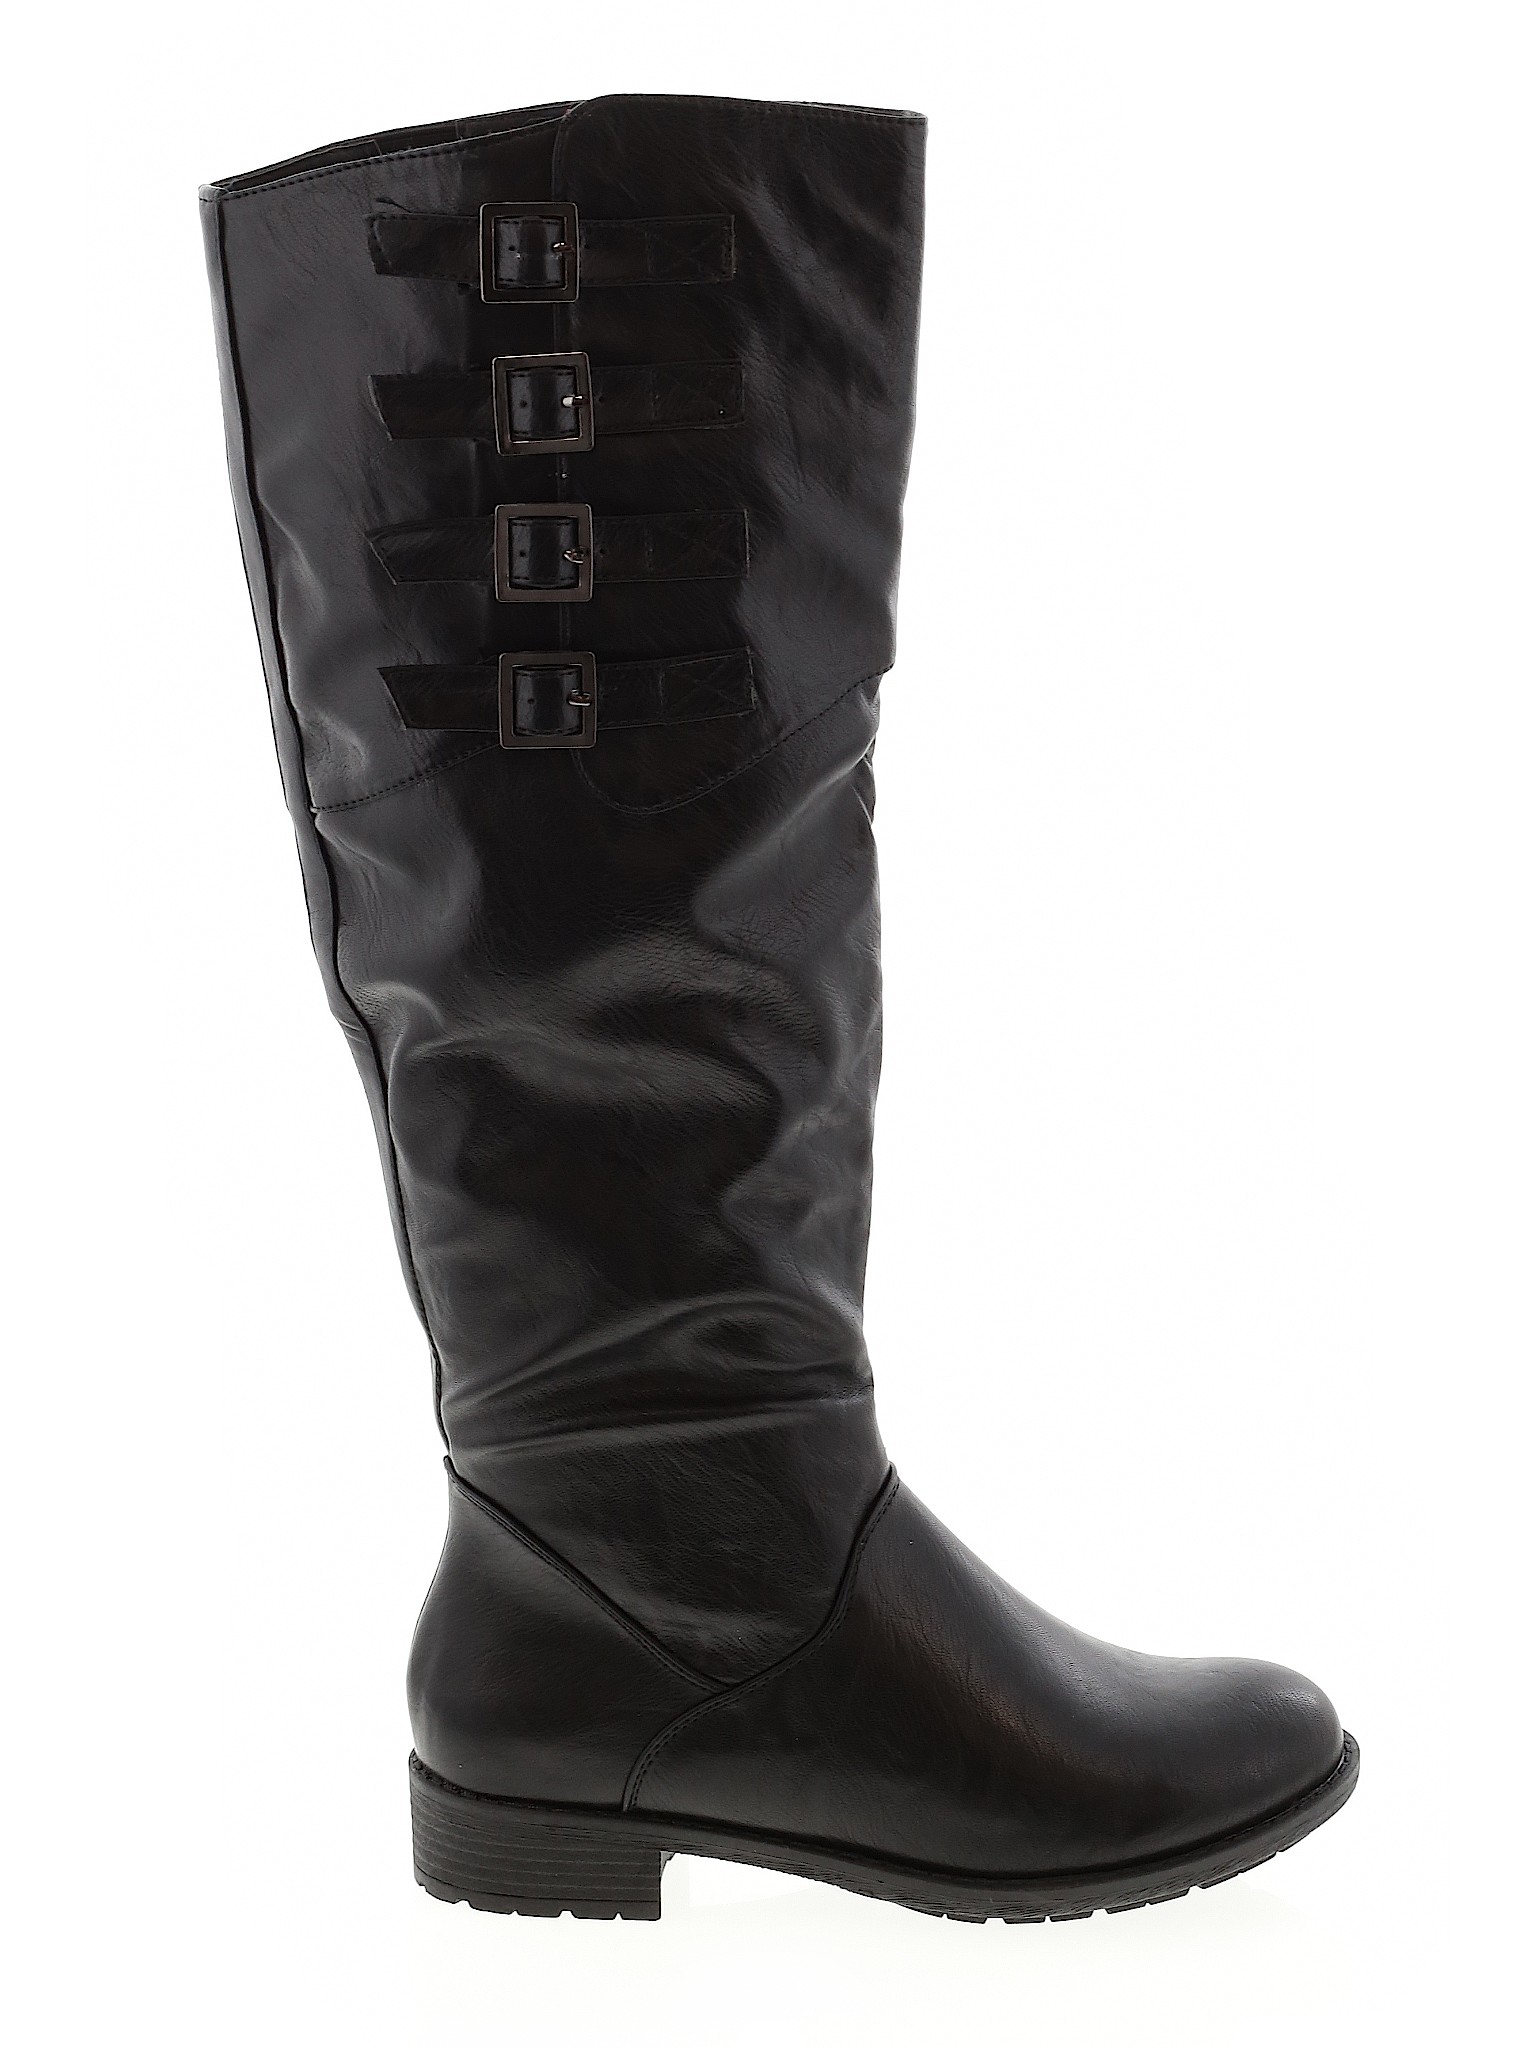 Just Fab Women Black Boots US 7.5 | eBay